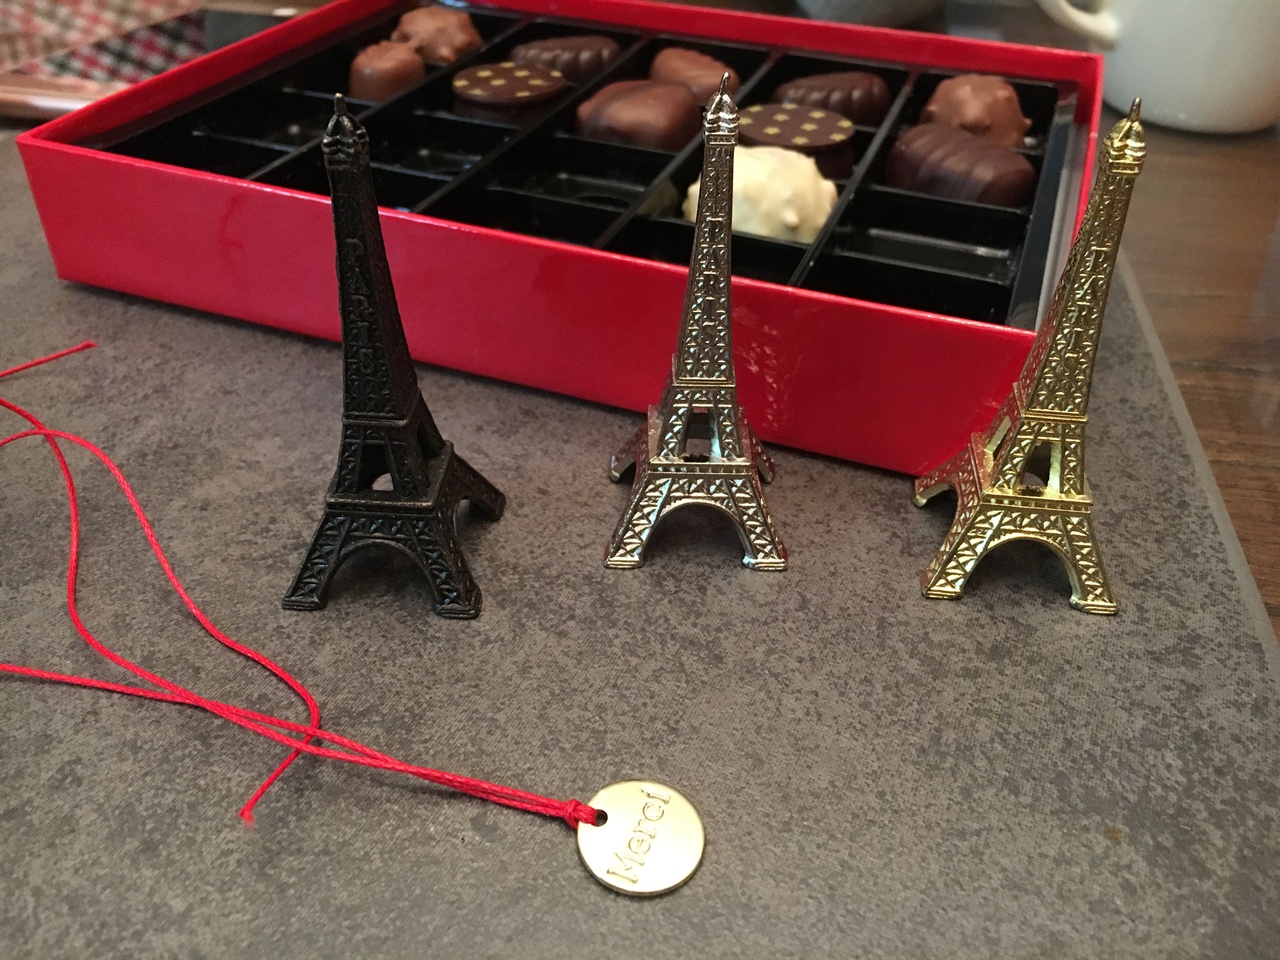  초콜릿과 에펠탑 모형, 메르시 팔찌